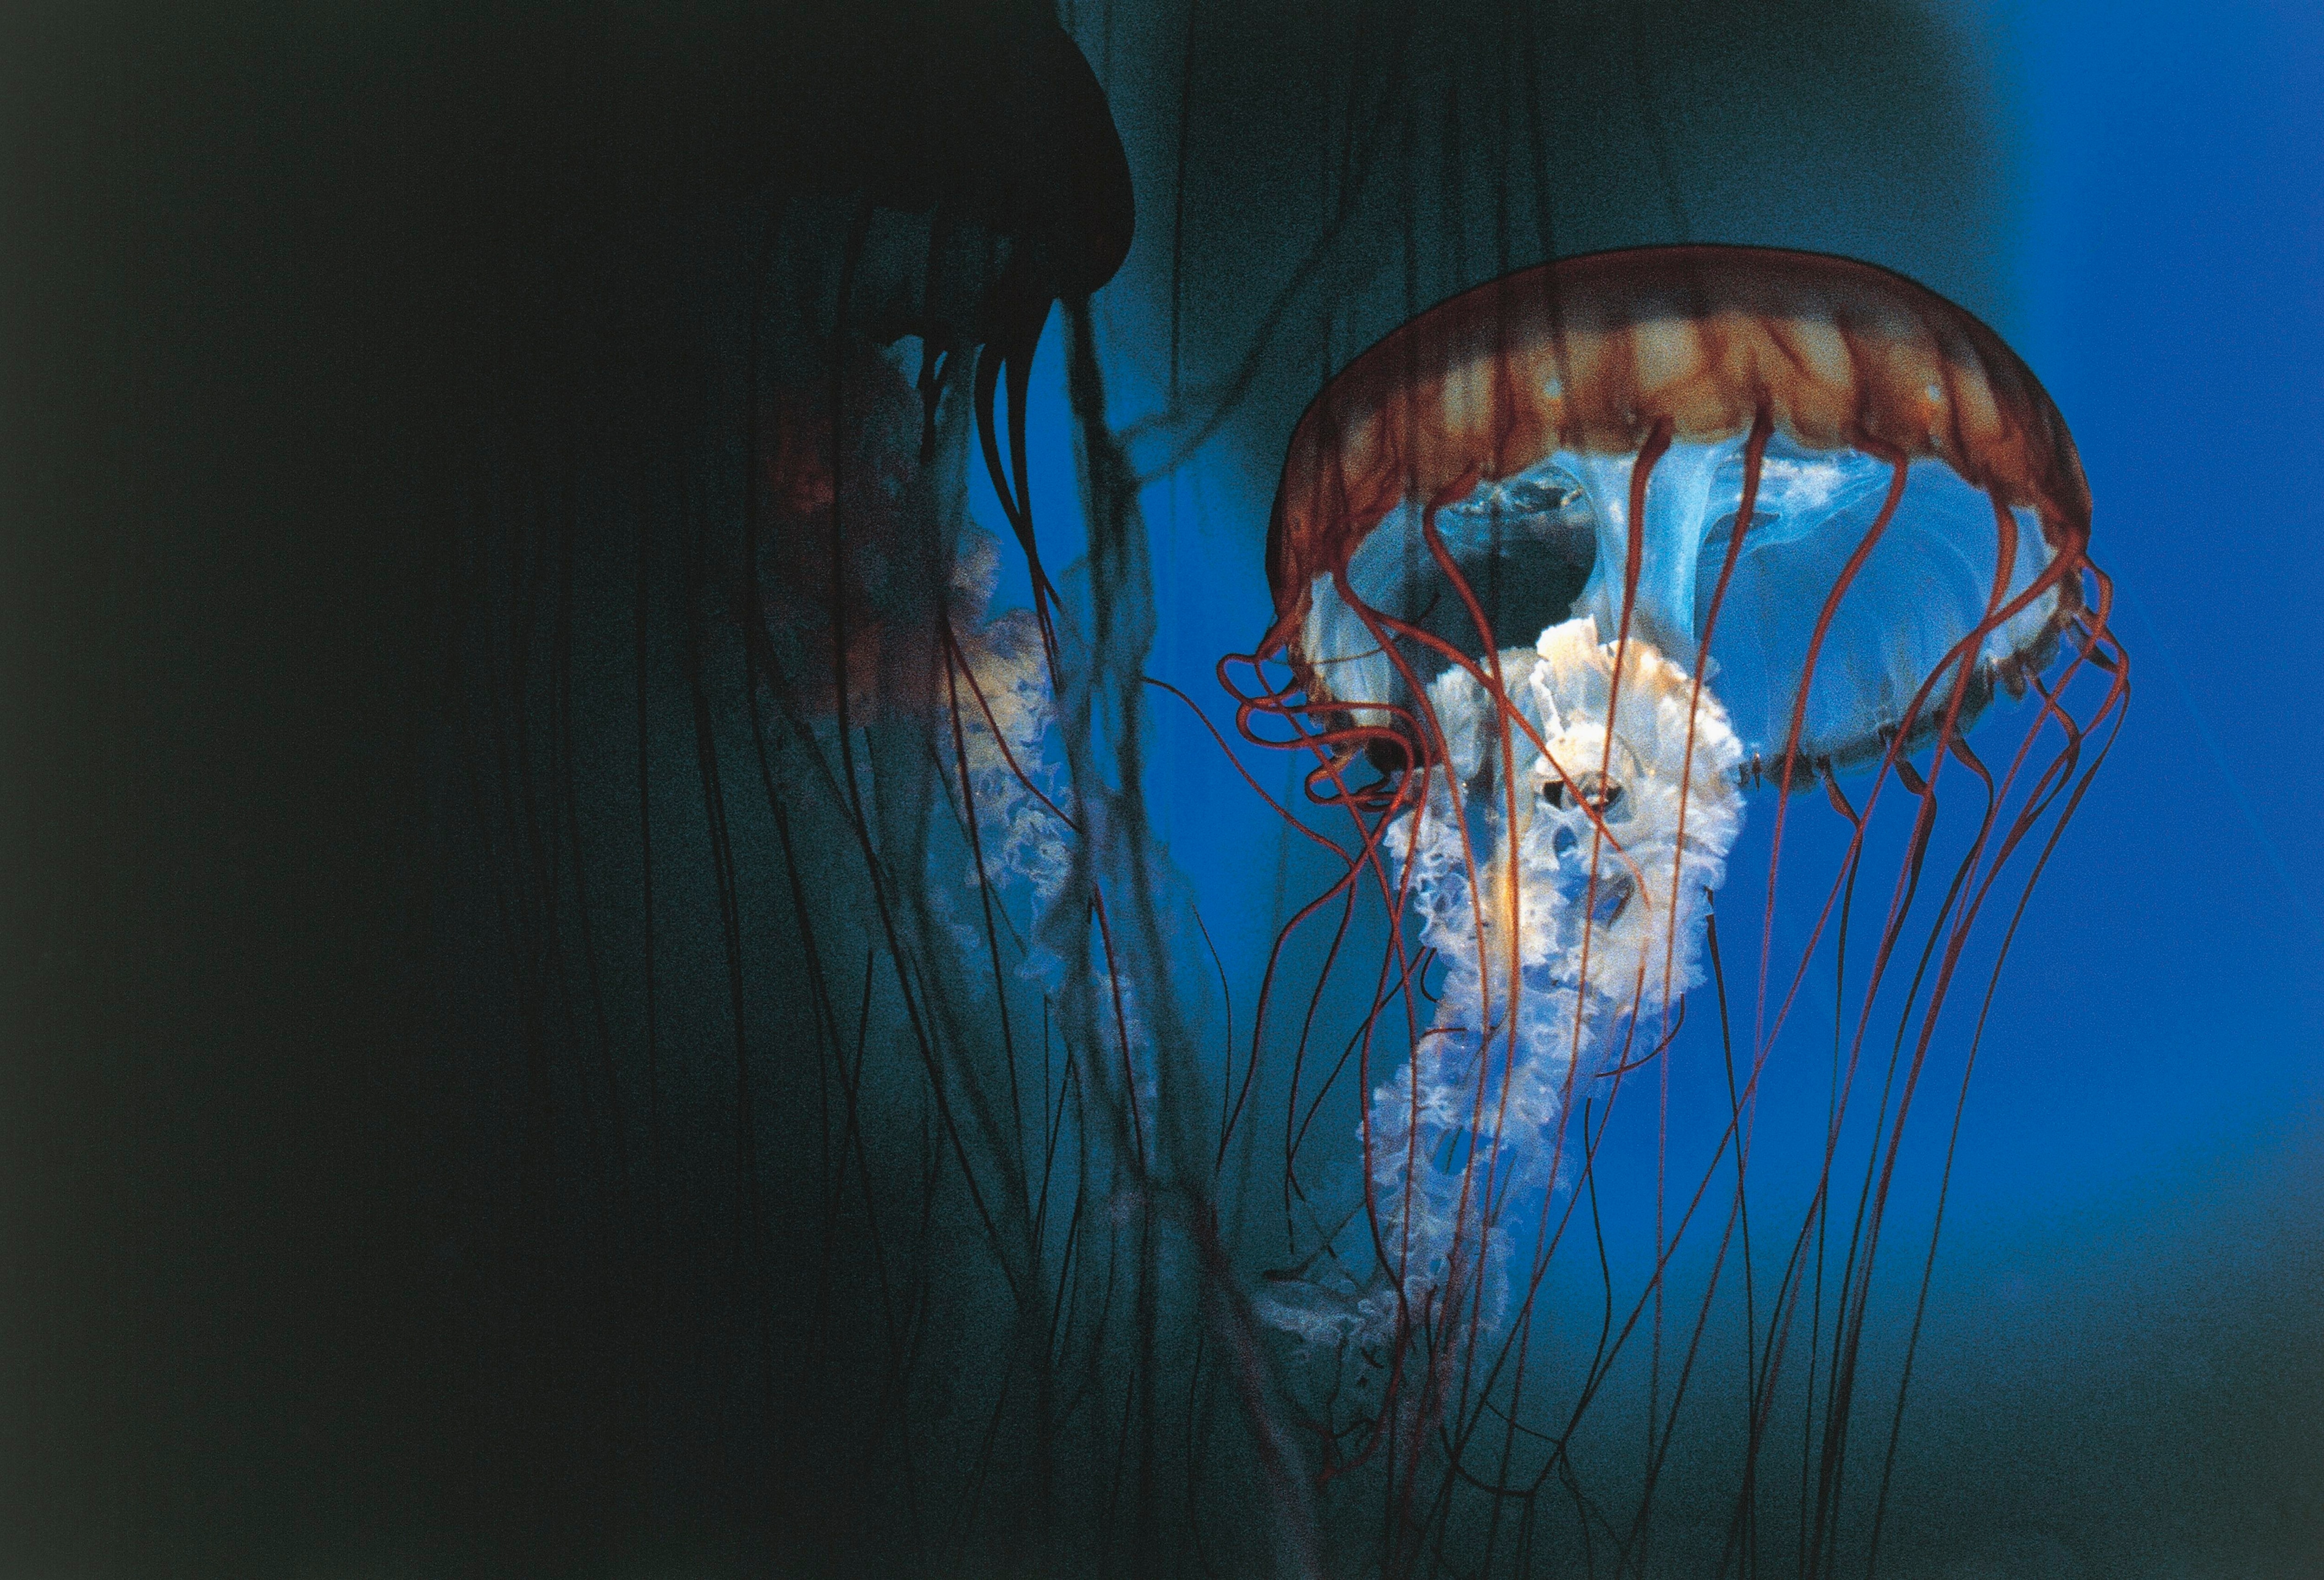 An underwater jellyfish